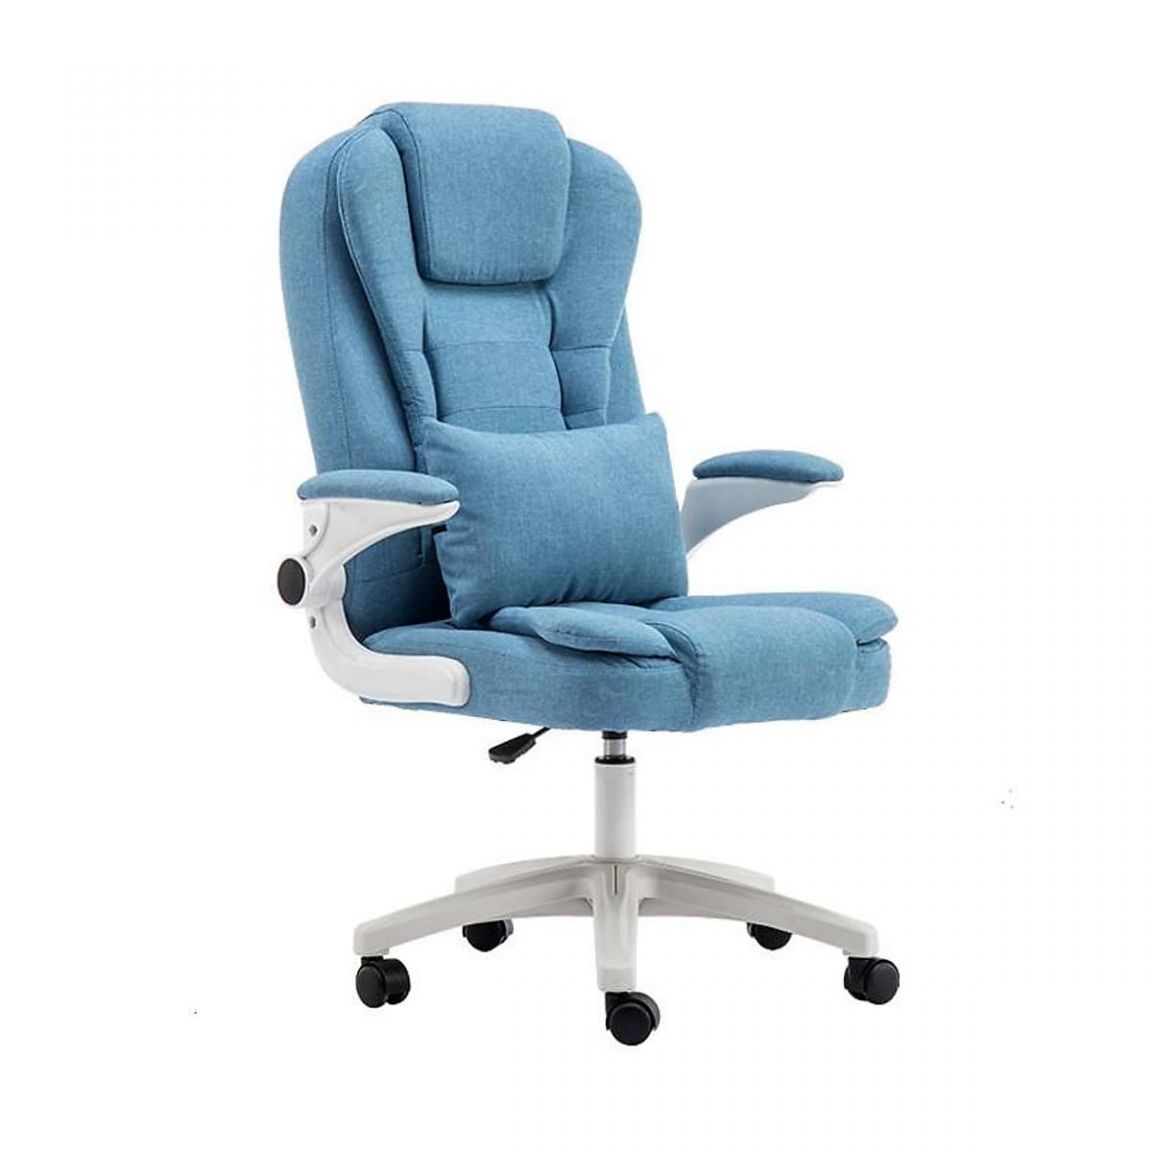 Ghế văn phòng màu xanh bọc nỉ có thiết kế sang trọng với chất liệu vải mềm có độ thấm hút tốt